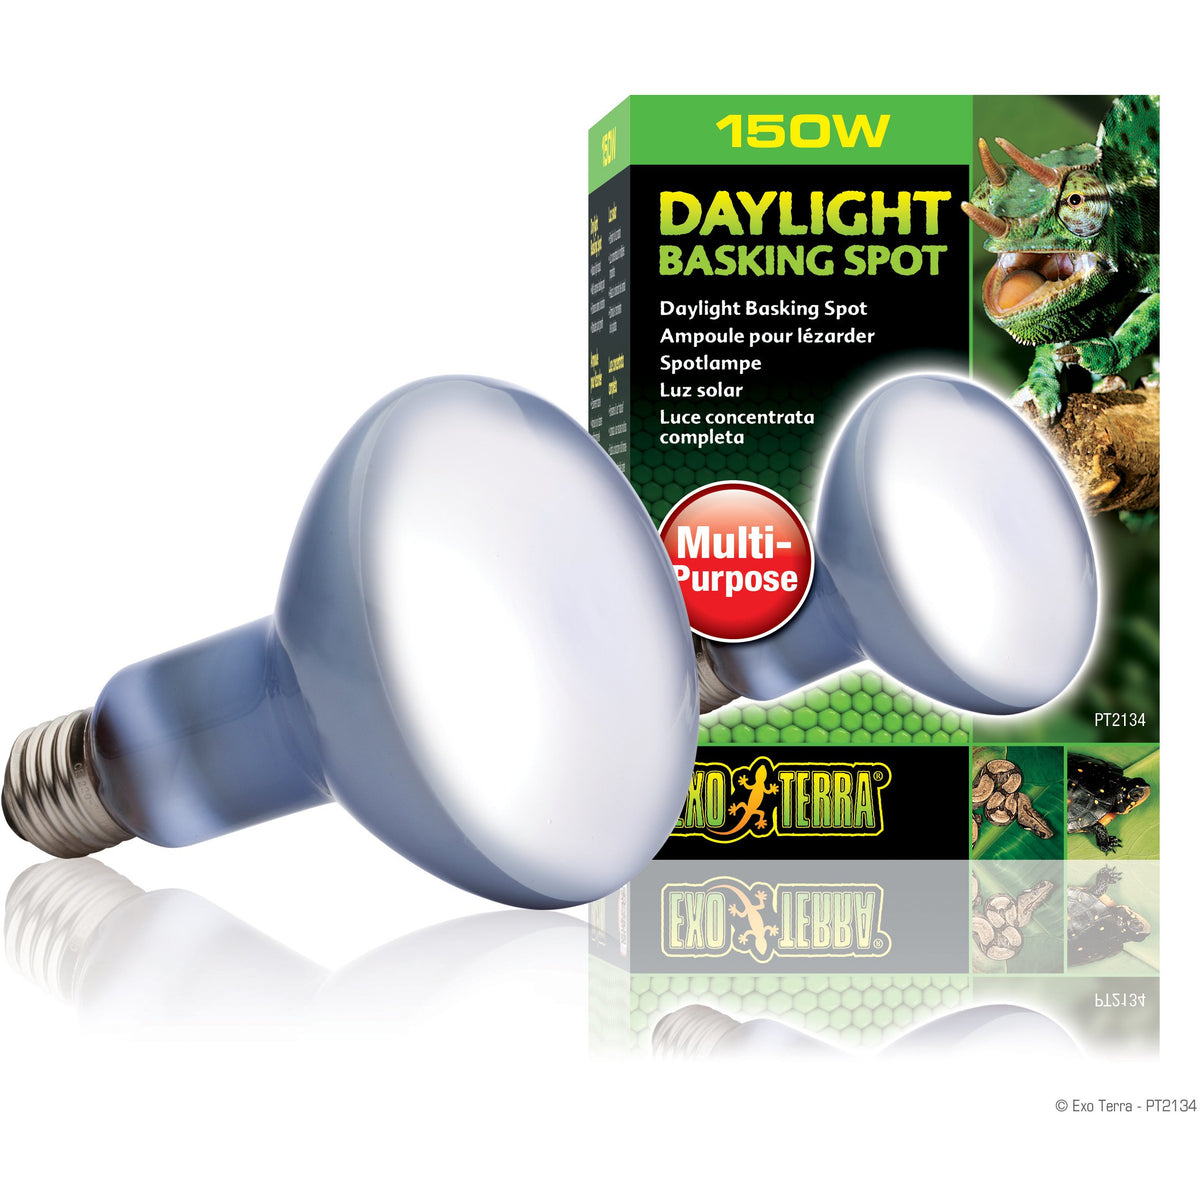 Exo Terra Daylight Basking Spot Lamp - R30 / 150 W